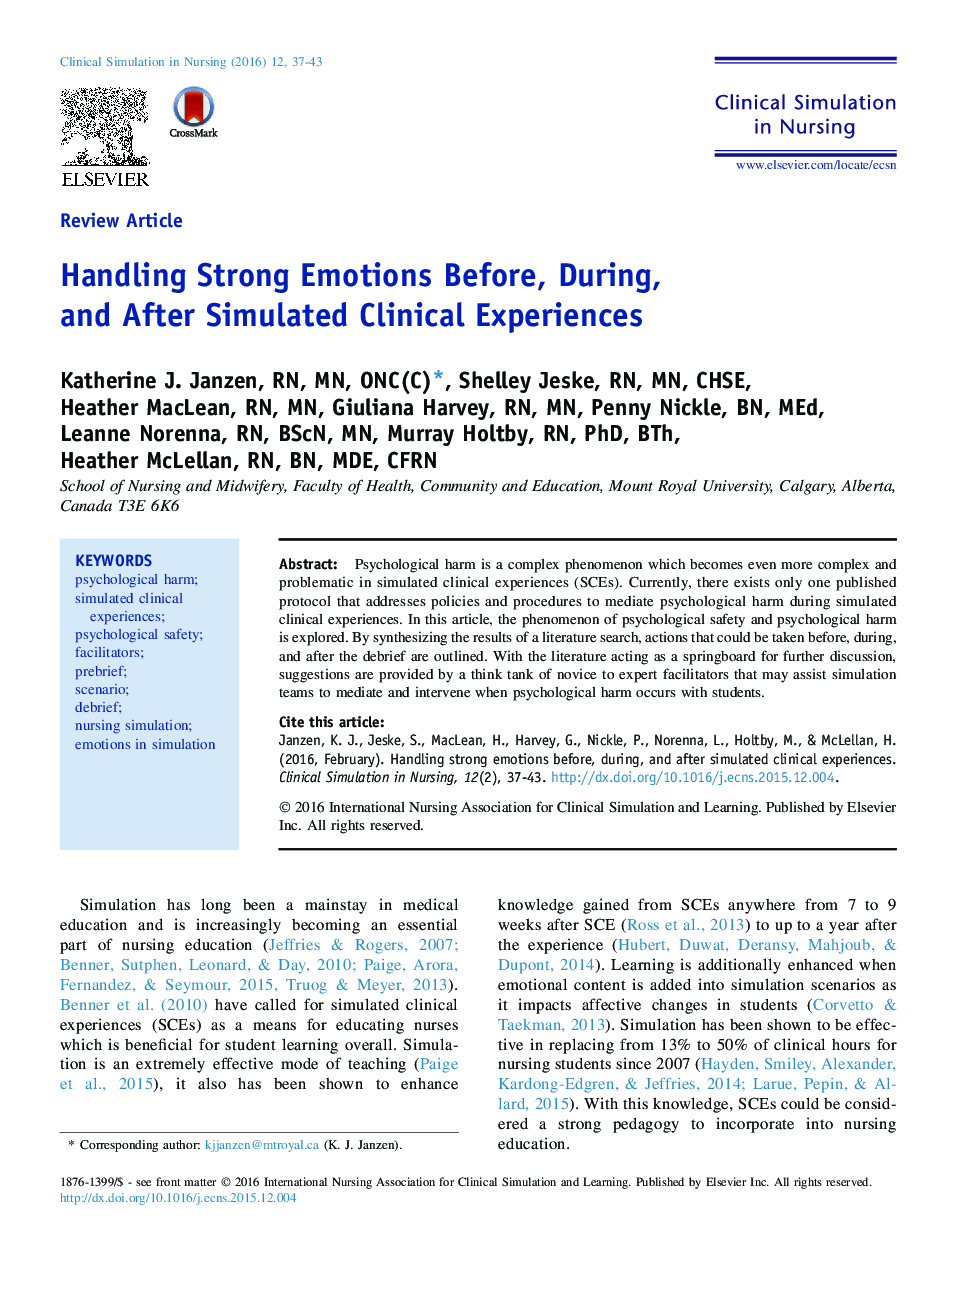 مدیریت احساسات قوی قبل، در طول و پس از تجربیات بالینی شبیه سازی شده 